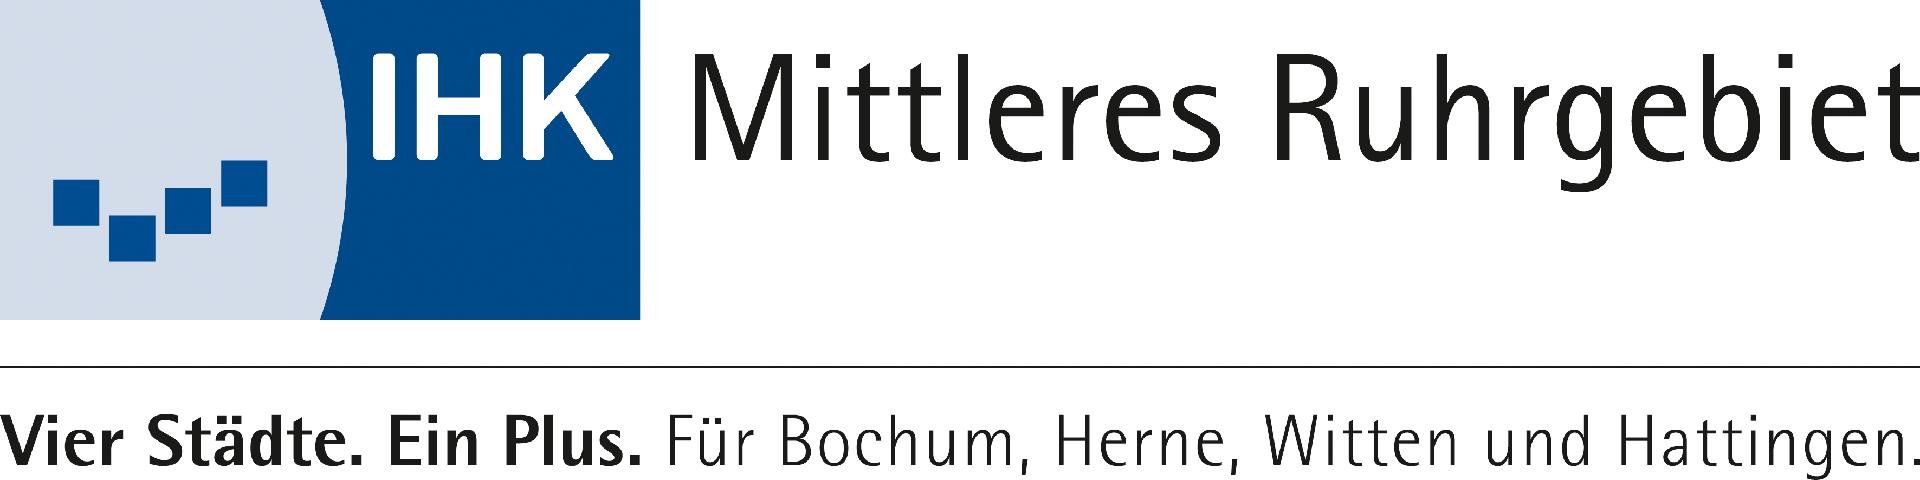 IHK Mittleres Ruhrgebiet